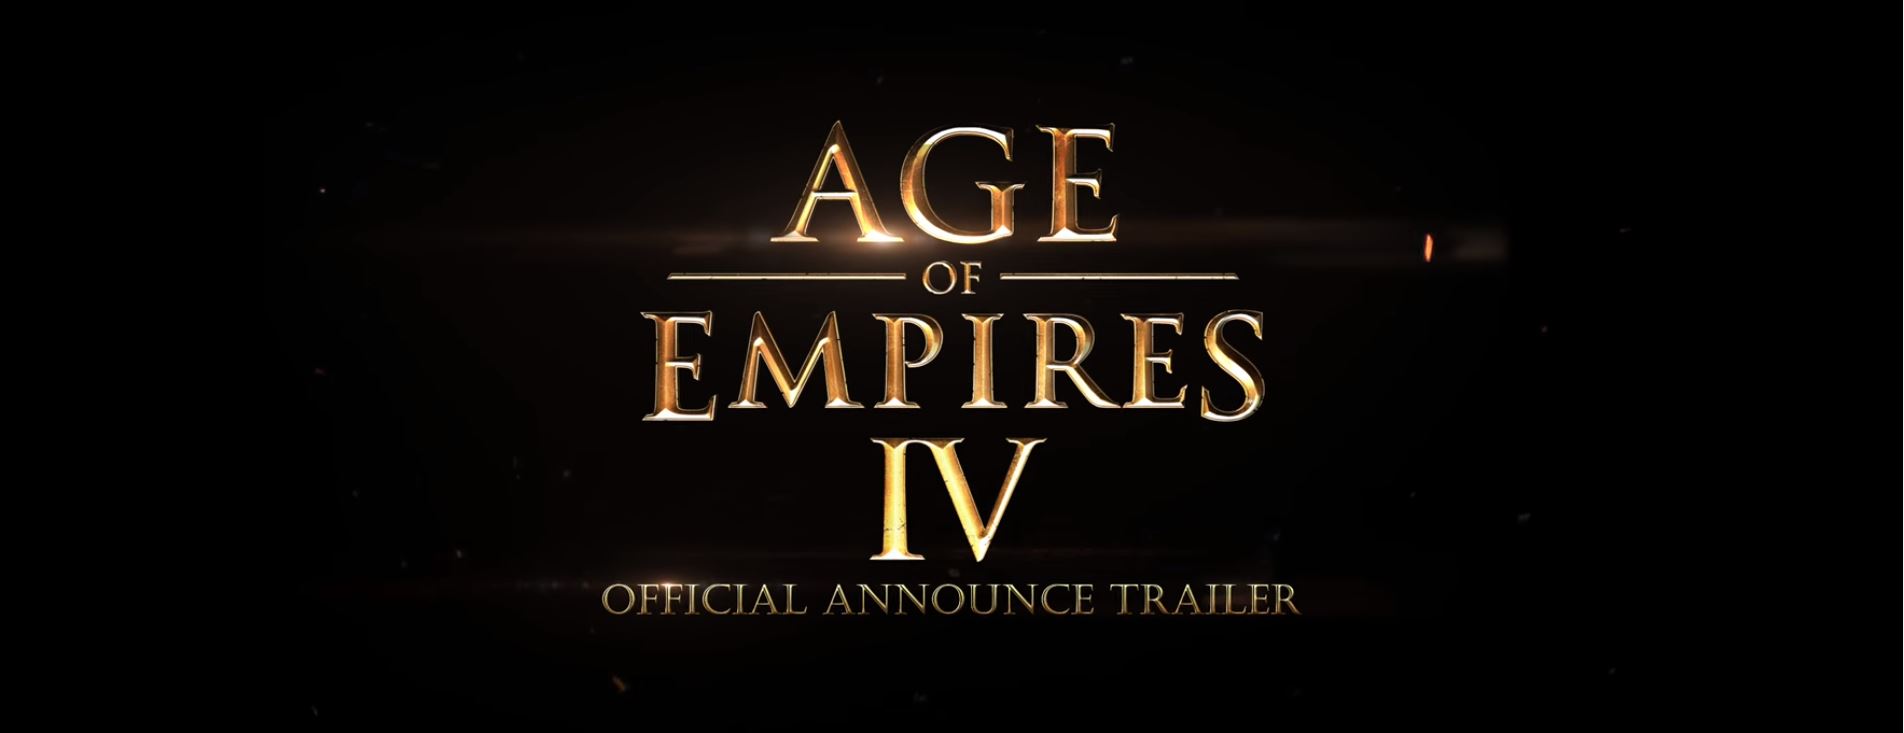 Age of Empires IV confirmado y con trailer de lanzamiento!